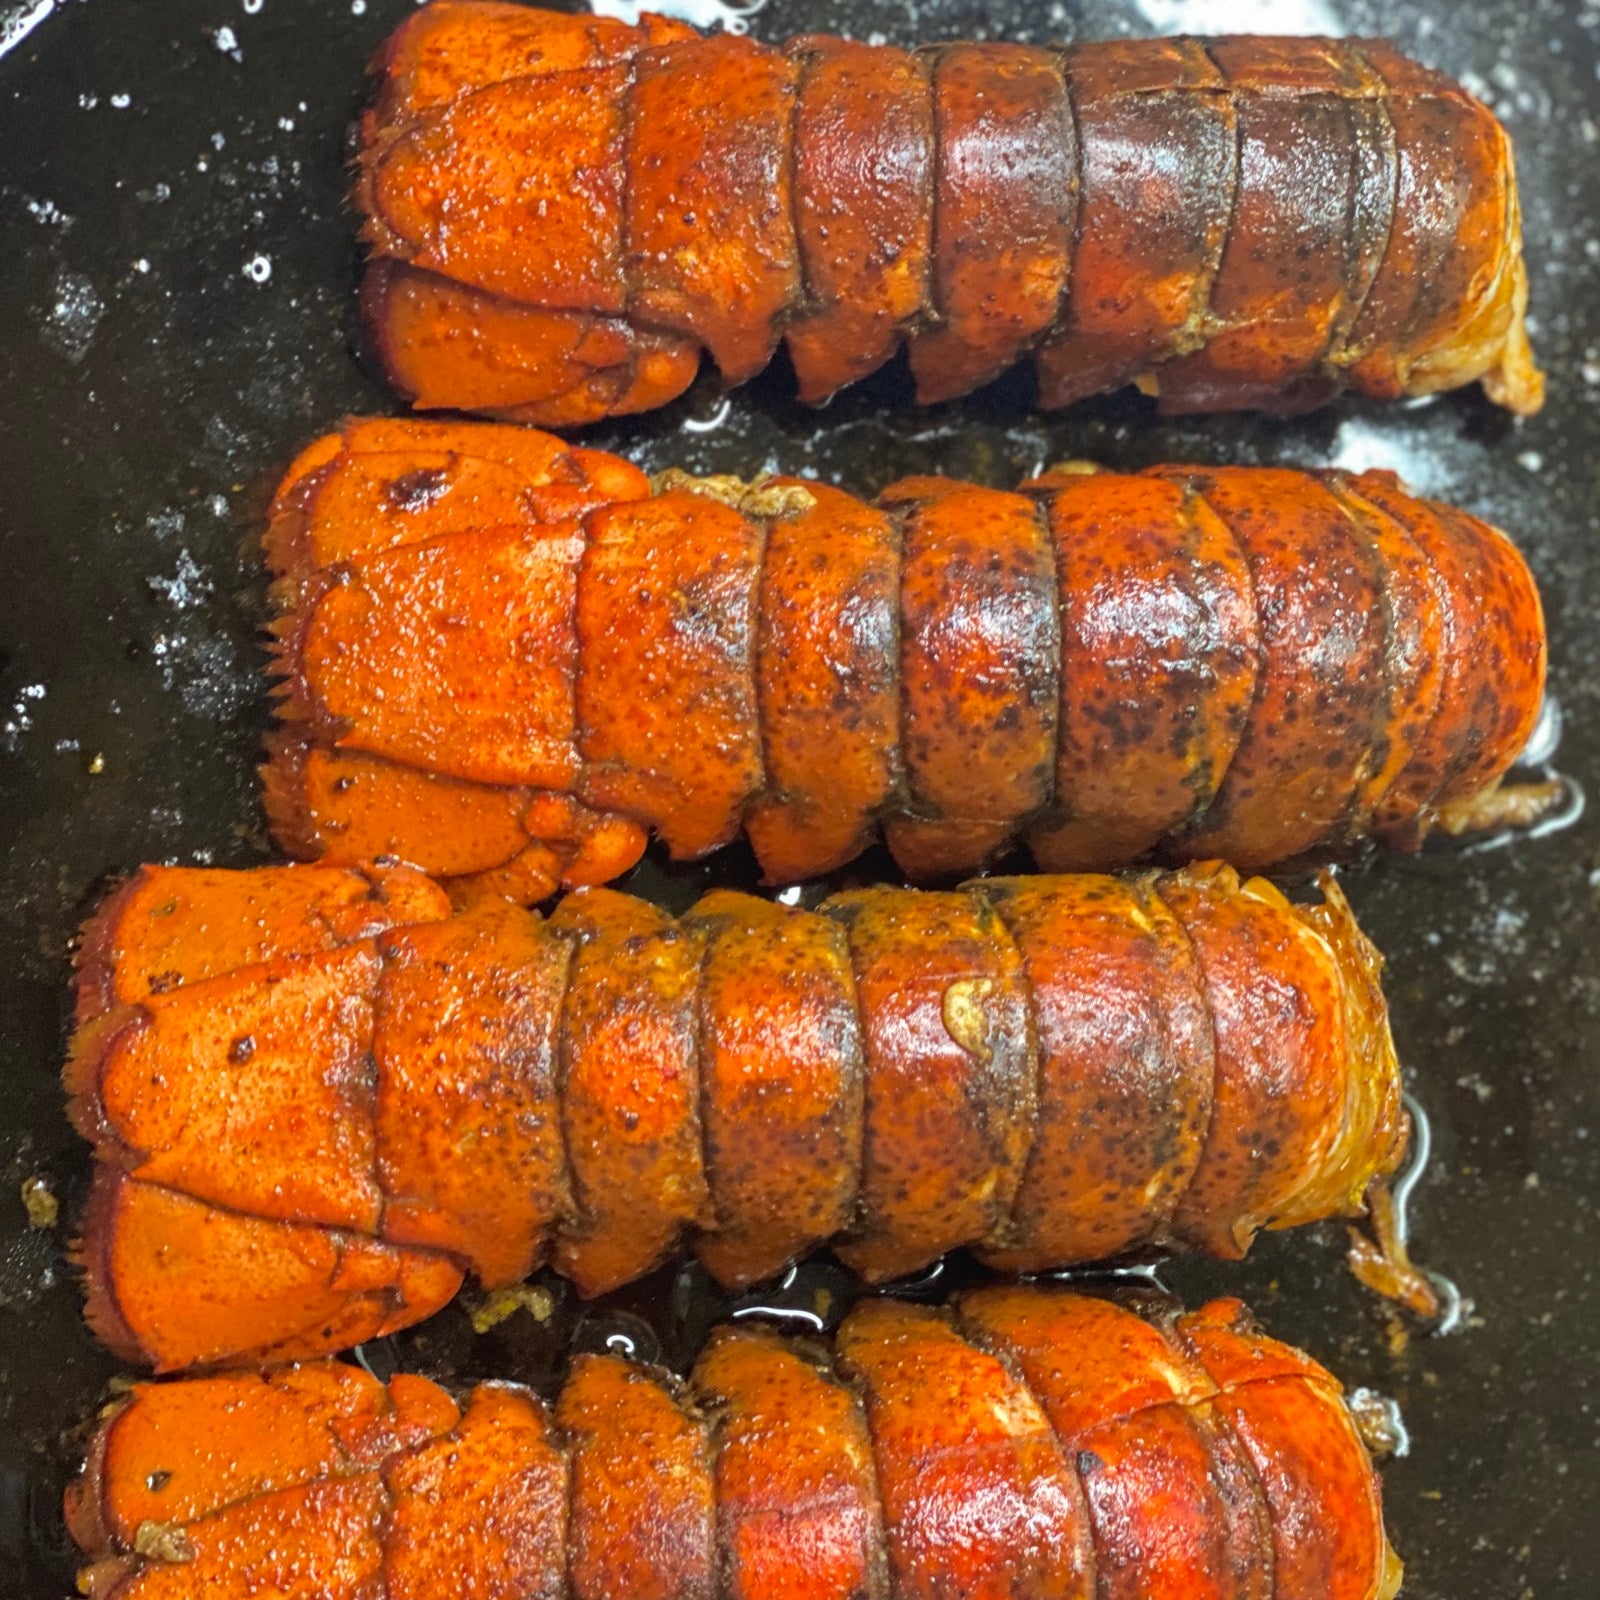 Baked Lobster Tails inspired by Joe Nekrasz